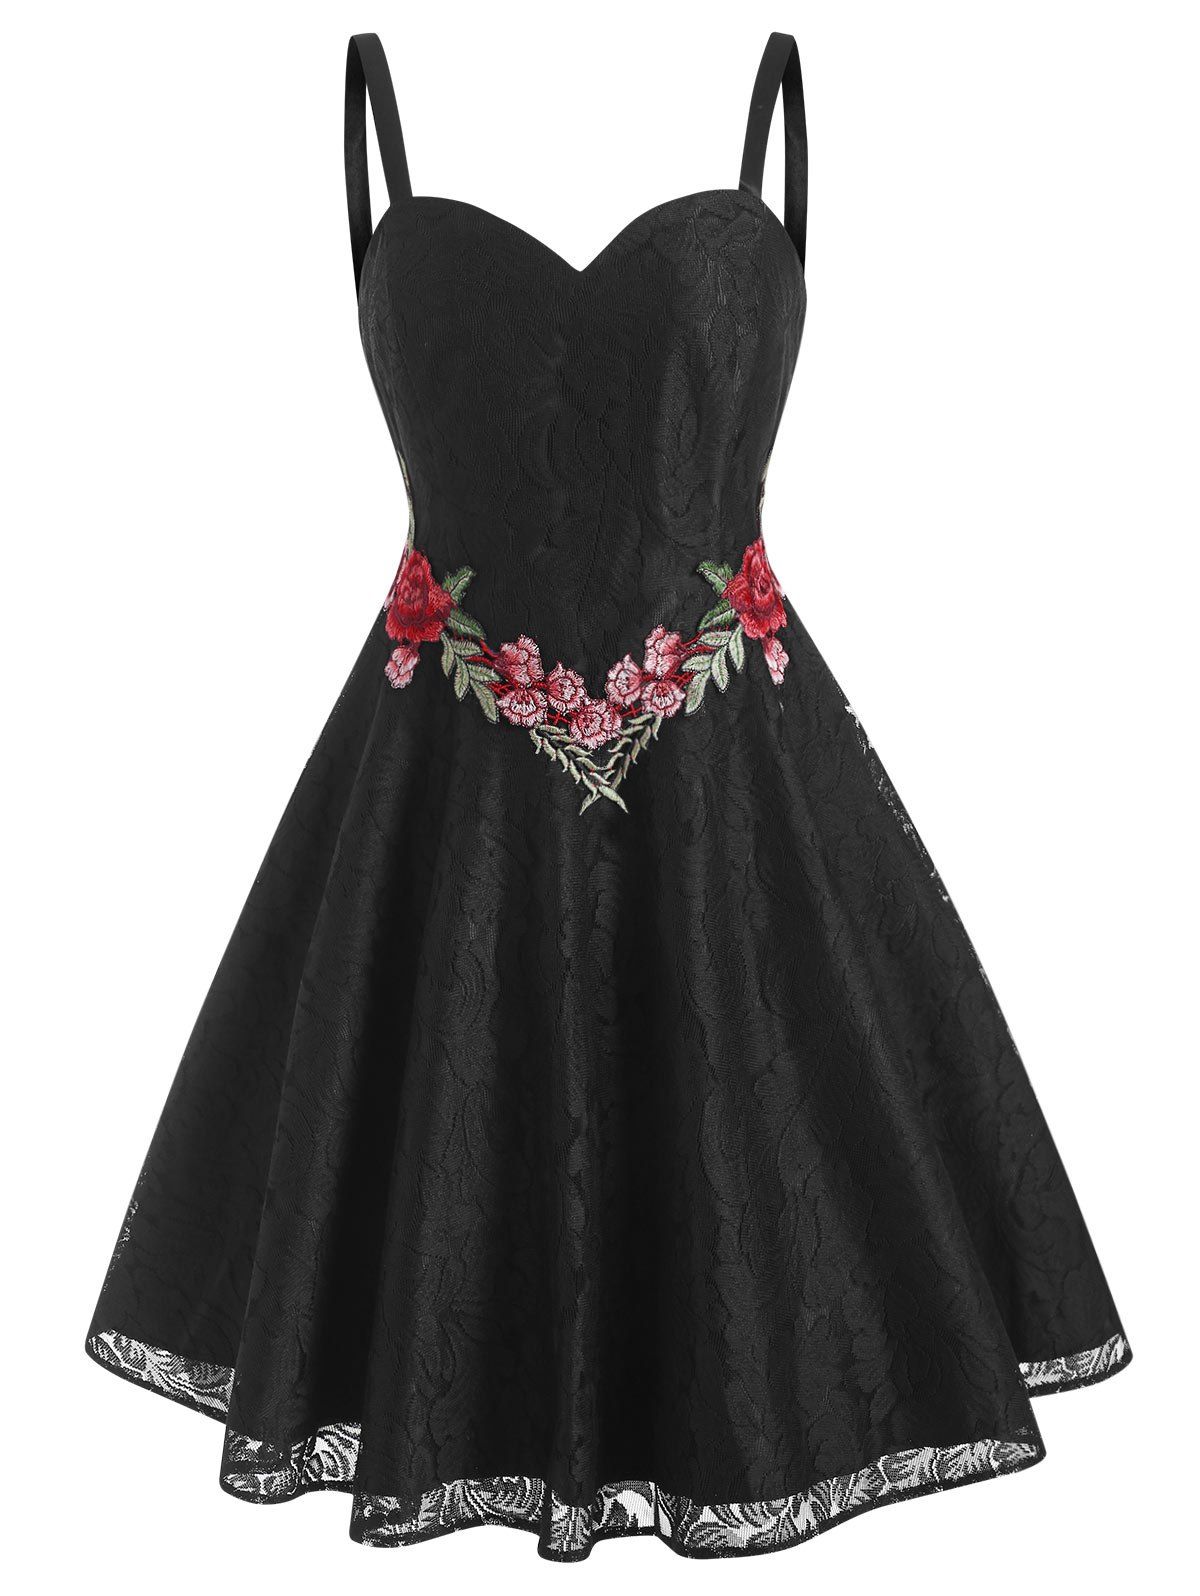 Lace Flower Applique Cami Cocktail Party Dress - BLACK S